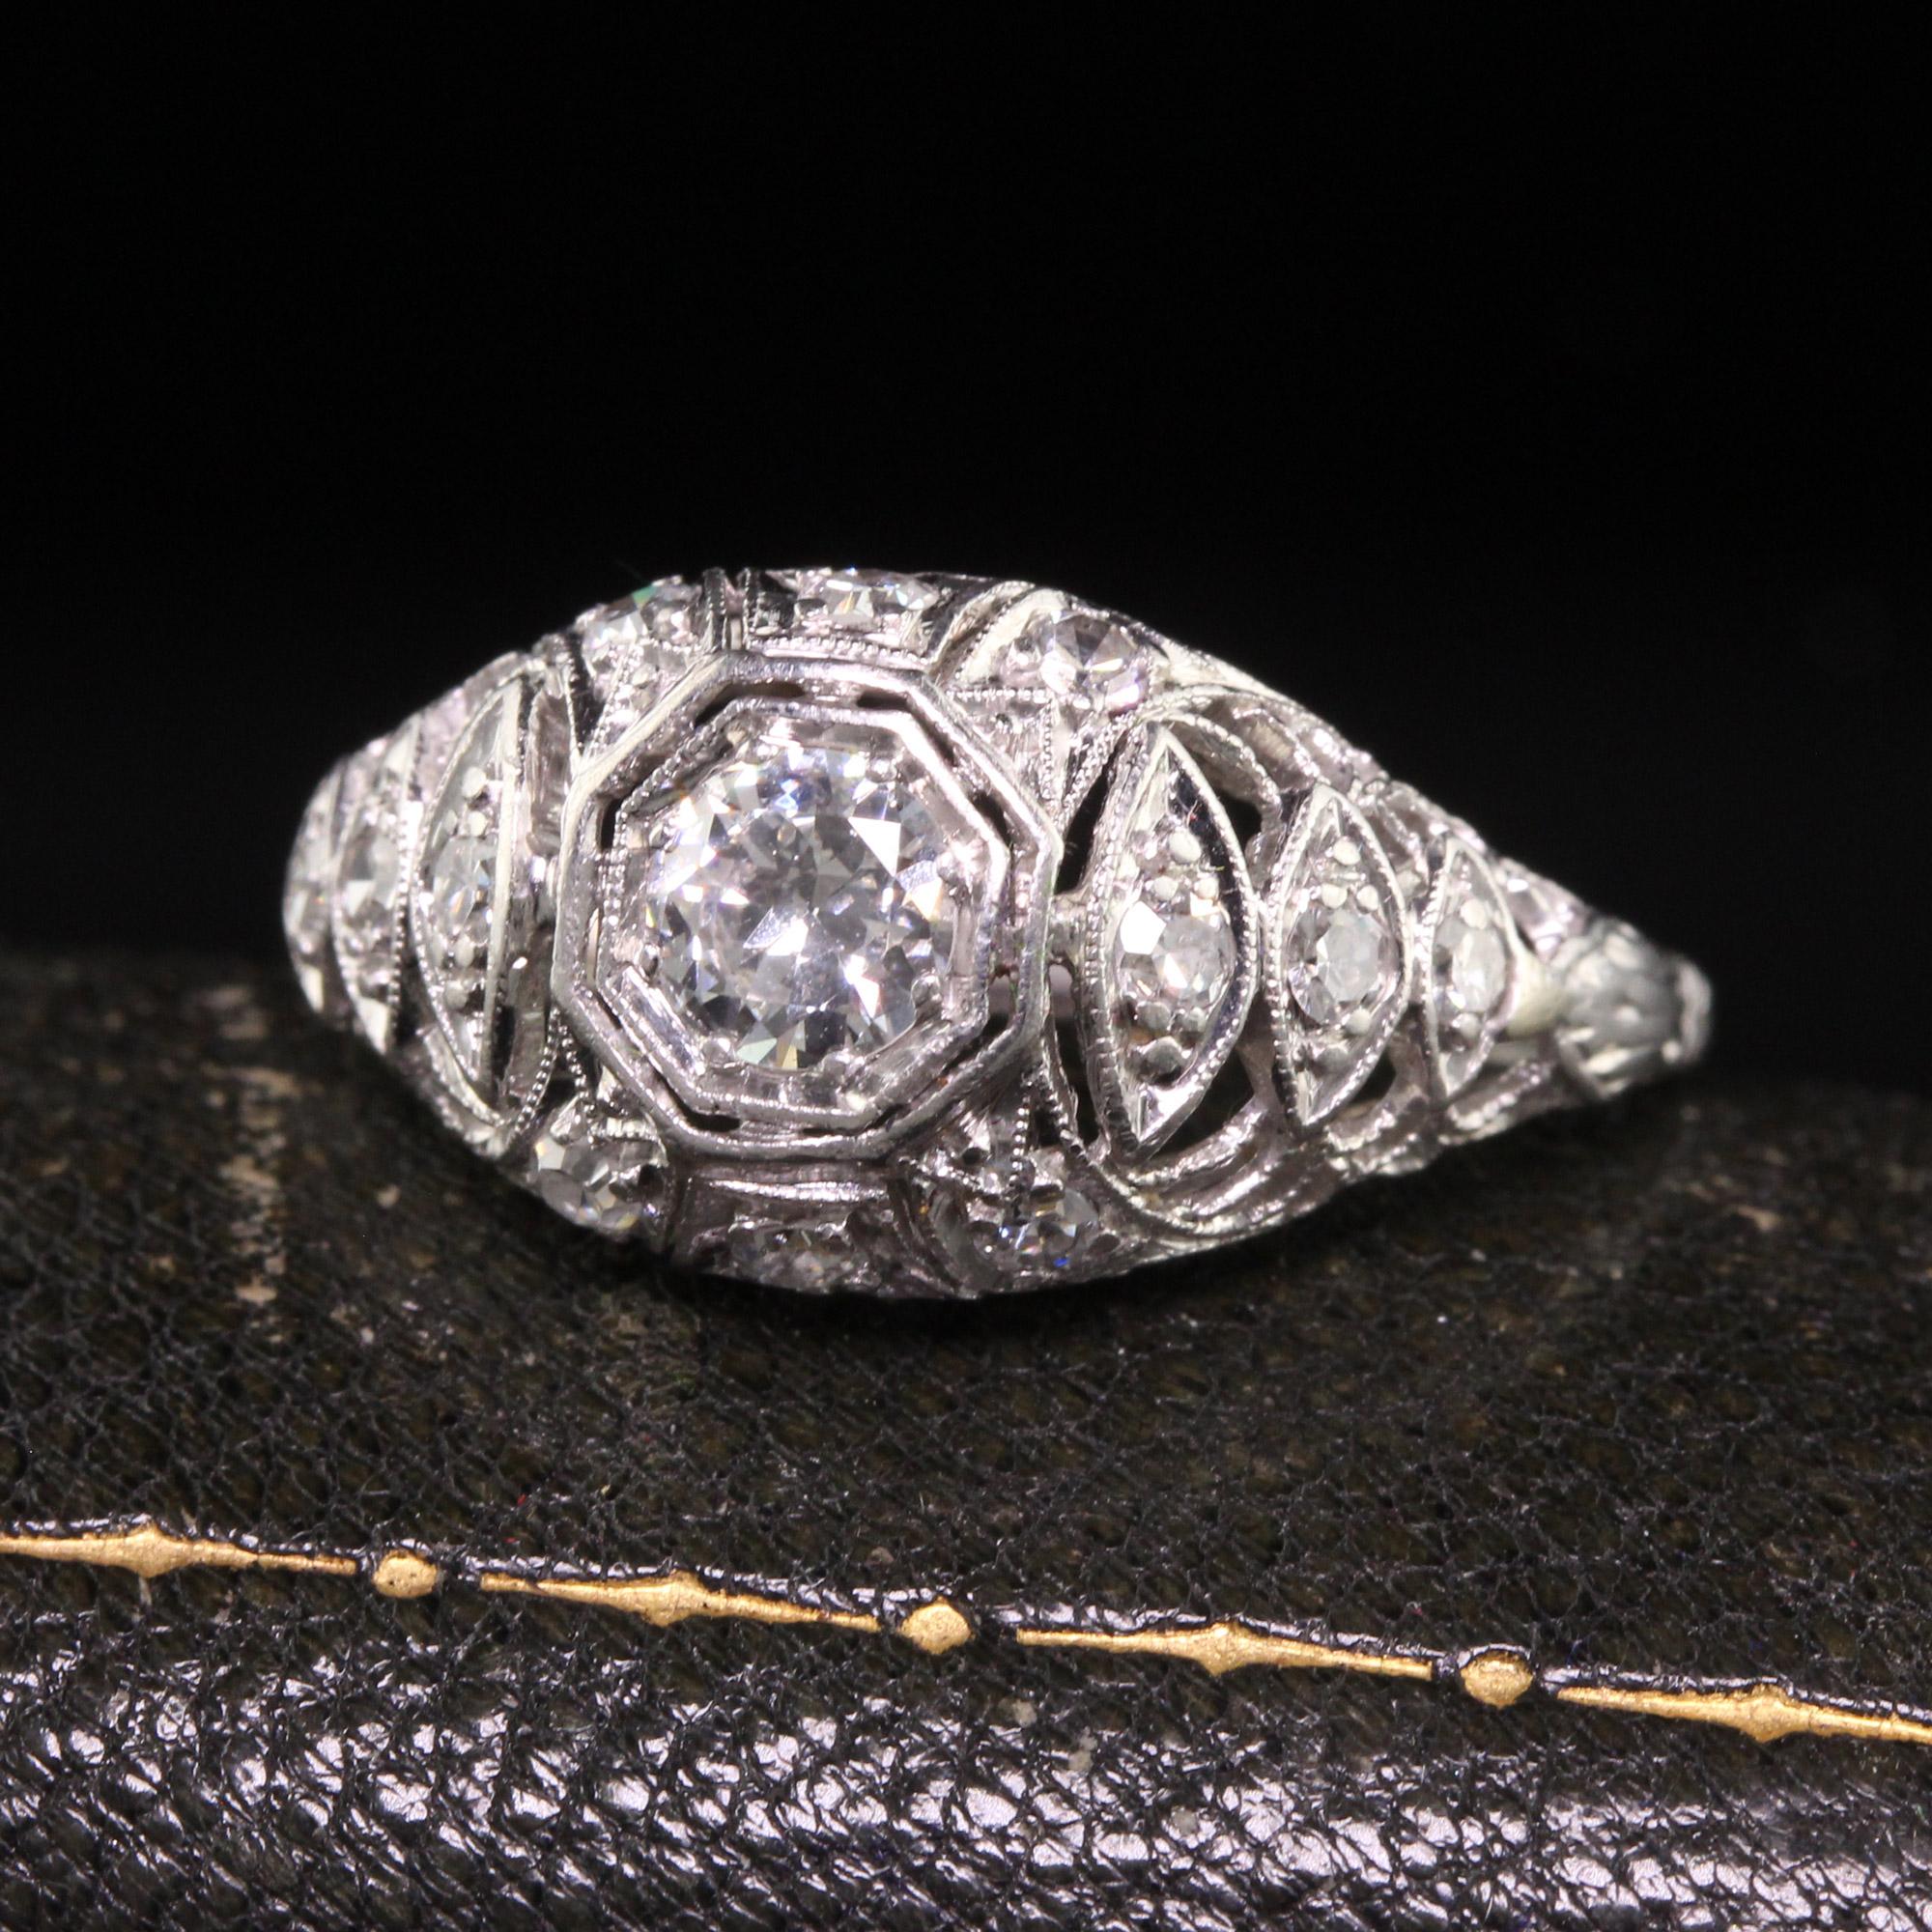 Schöner antiker Art Deco Platin Old European Diamond Filigree Verlobungsring. Dieser wunderschöne Ring ist aus Platin gefertigt. In der Mitte befindet sich ein Diamant mit altem europäischem Schliff in einer schönen filigranen Fassung. Die kleineren